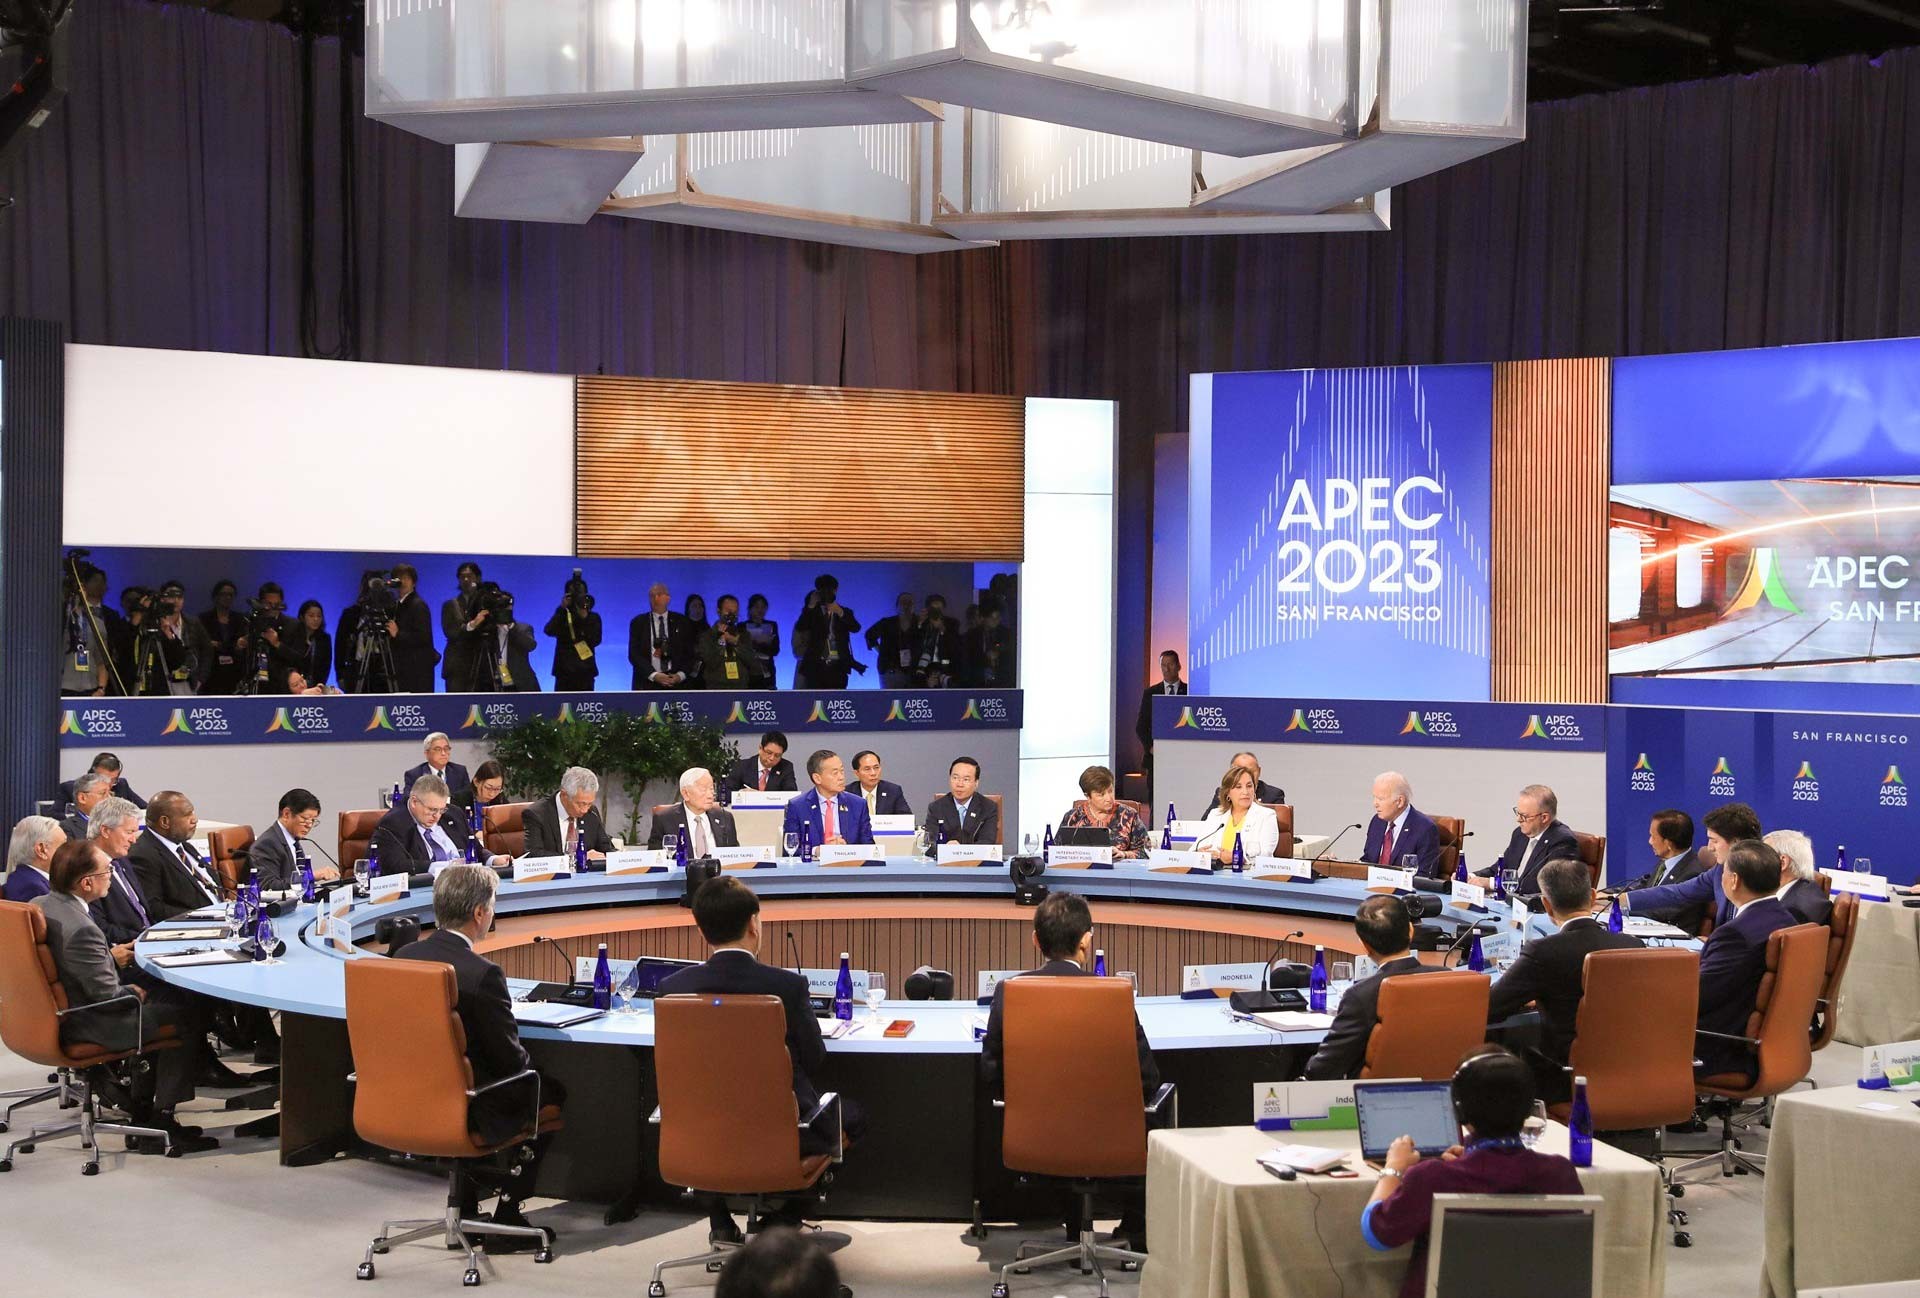 Chủ tịch nước Võ Văn Thưởng dự Hội nghị các Nhà Lãnh đạo kinh tế của Diễn đàn hợp tác kinh tế châu Á - Thái Bình Dương (APEC) lần thứ 30.